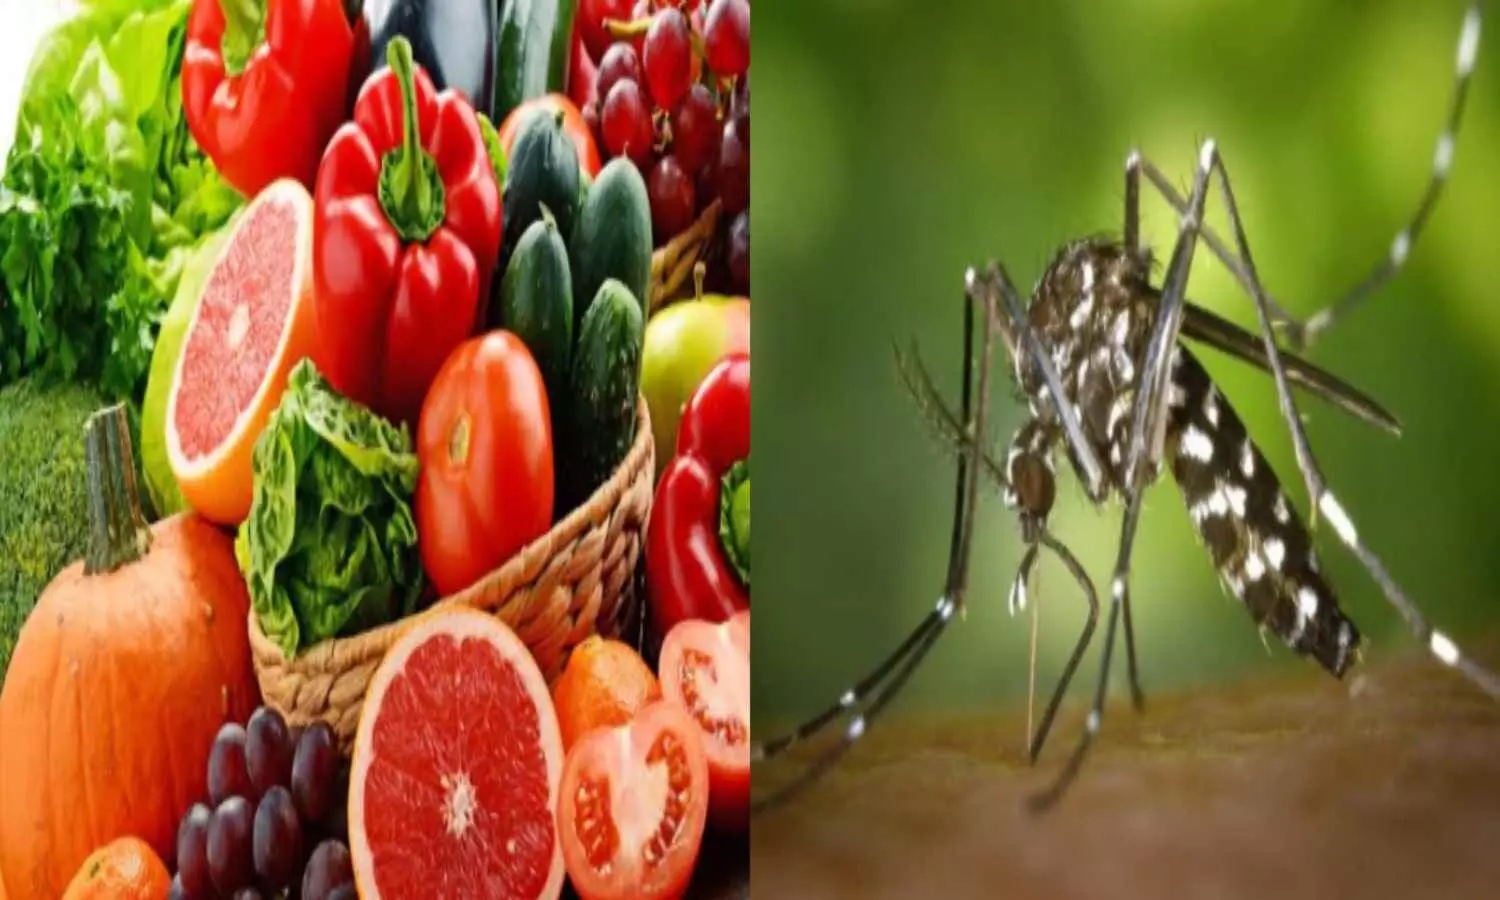 Foods to avoid in Dengue